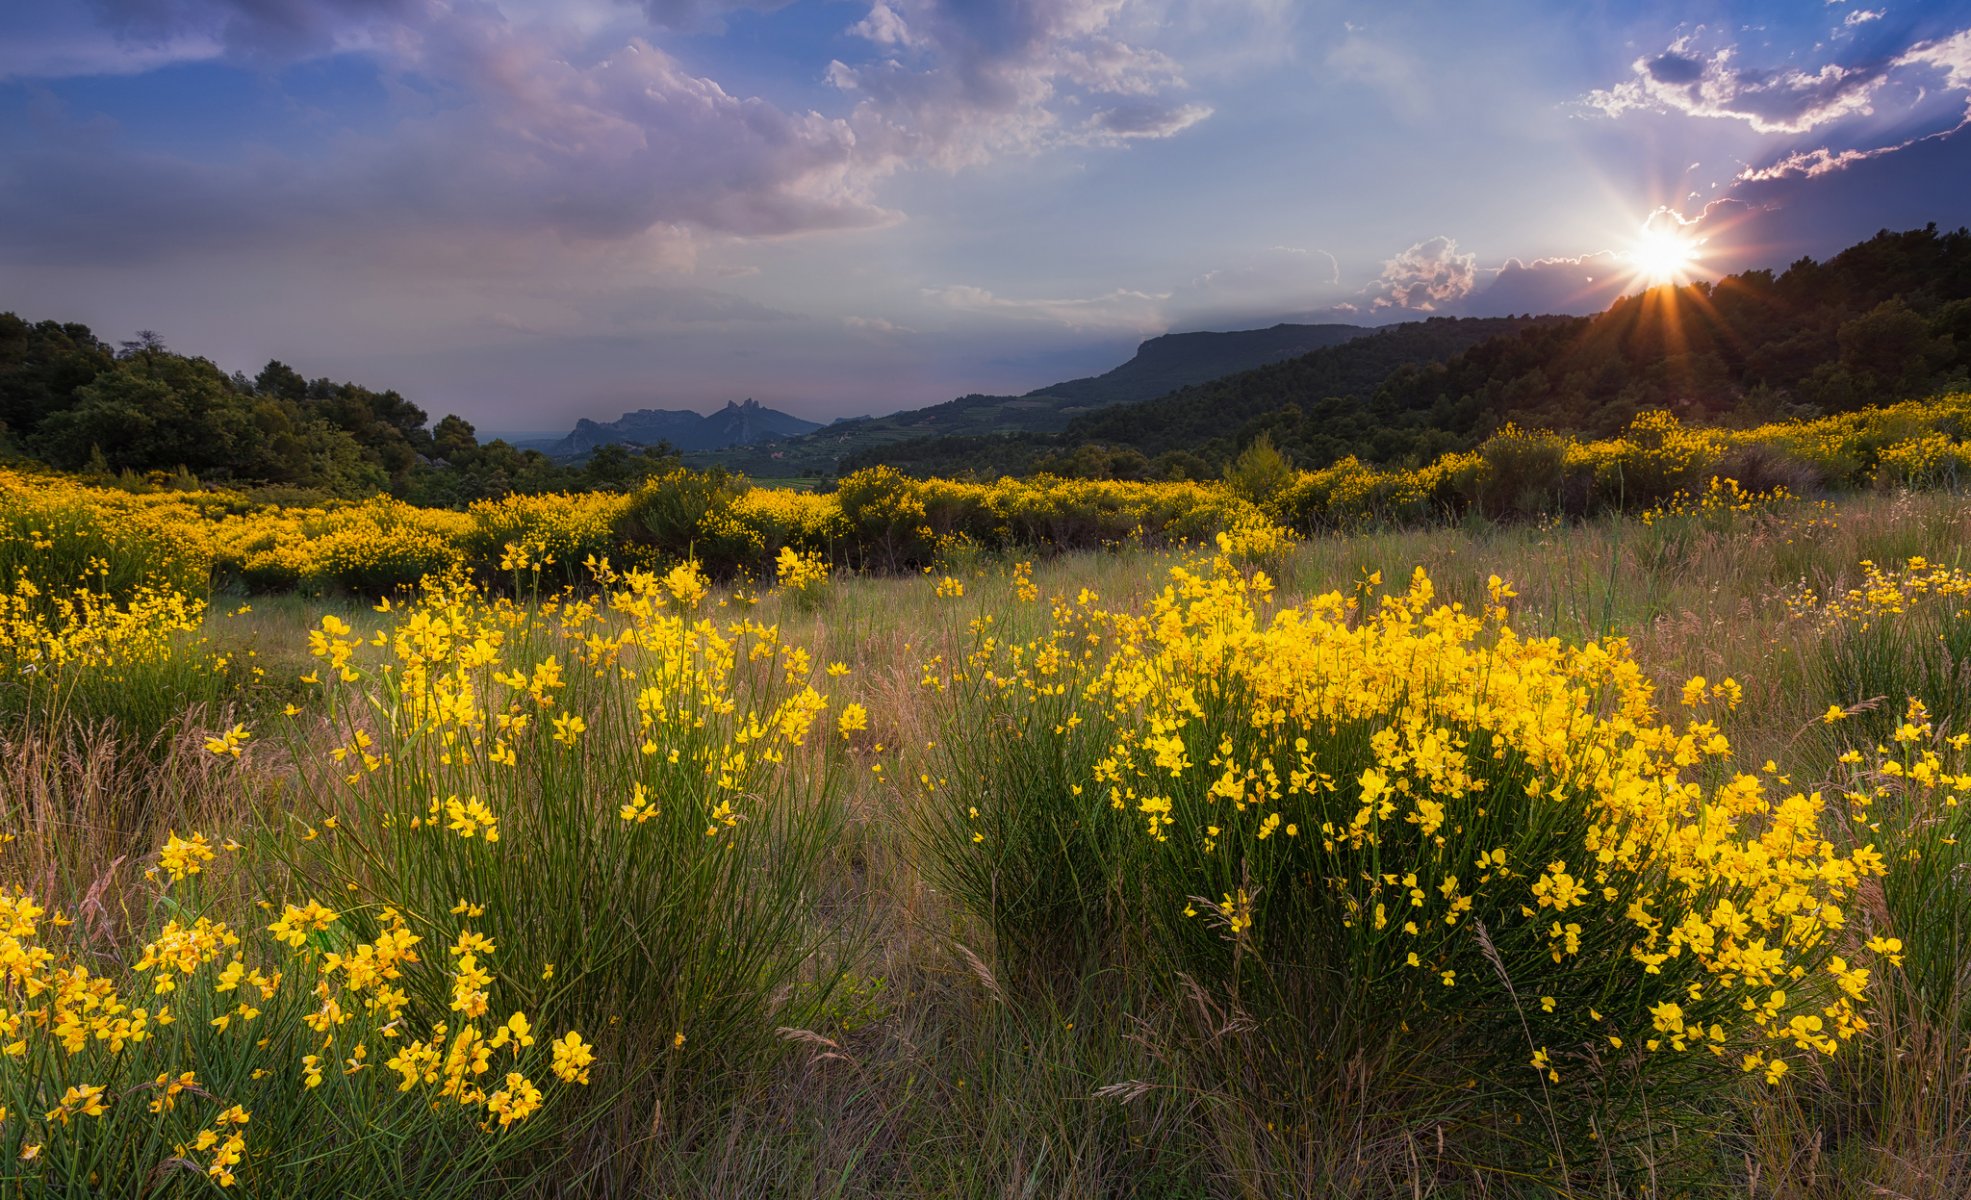 paysage nature clairière fleurs jaune herbe soleil coucher de soleil montagnes arbres nuages